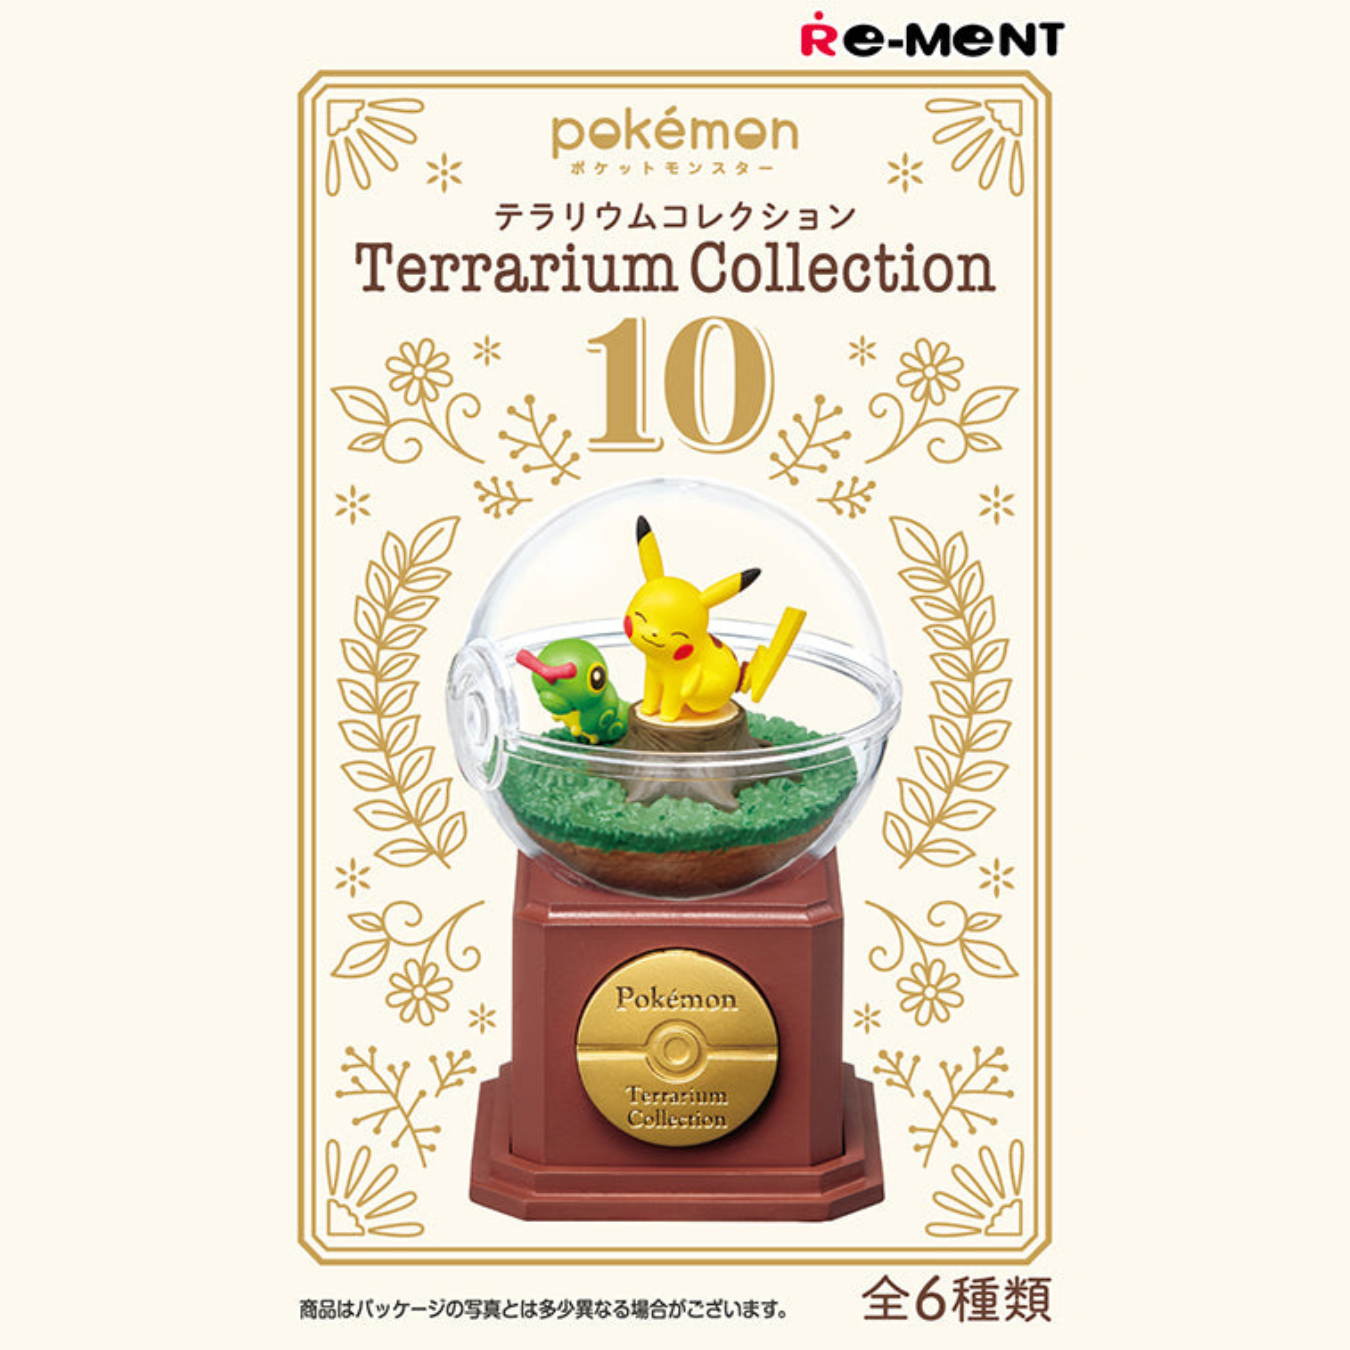 【New】re-Ment: Pokémon Terrarium Collection 10 Series Blind Box